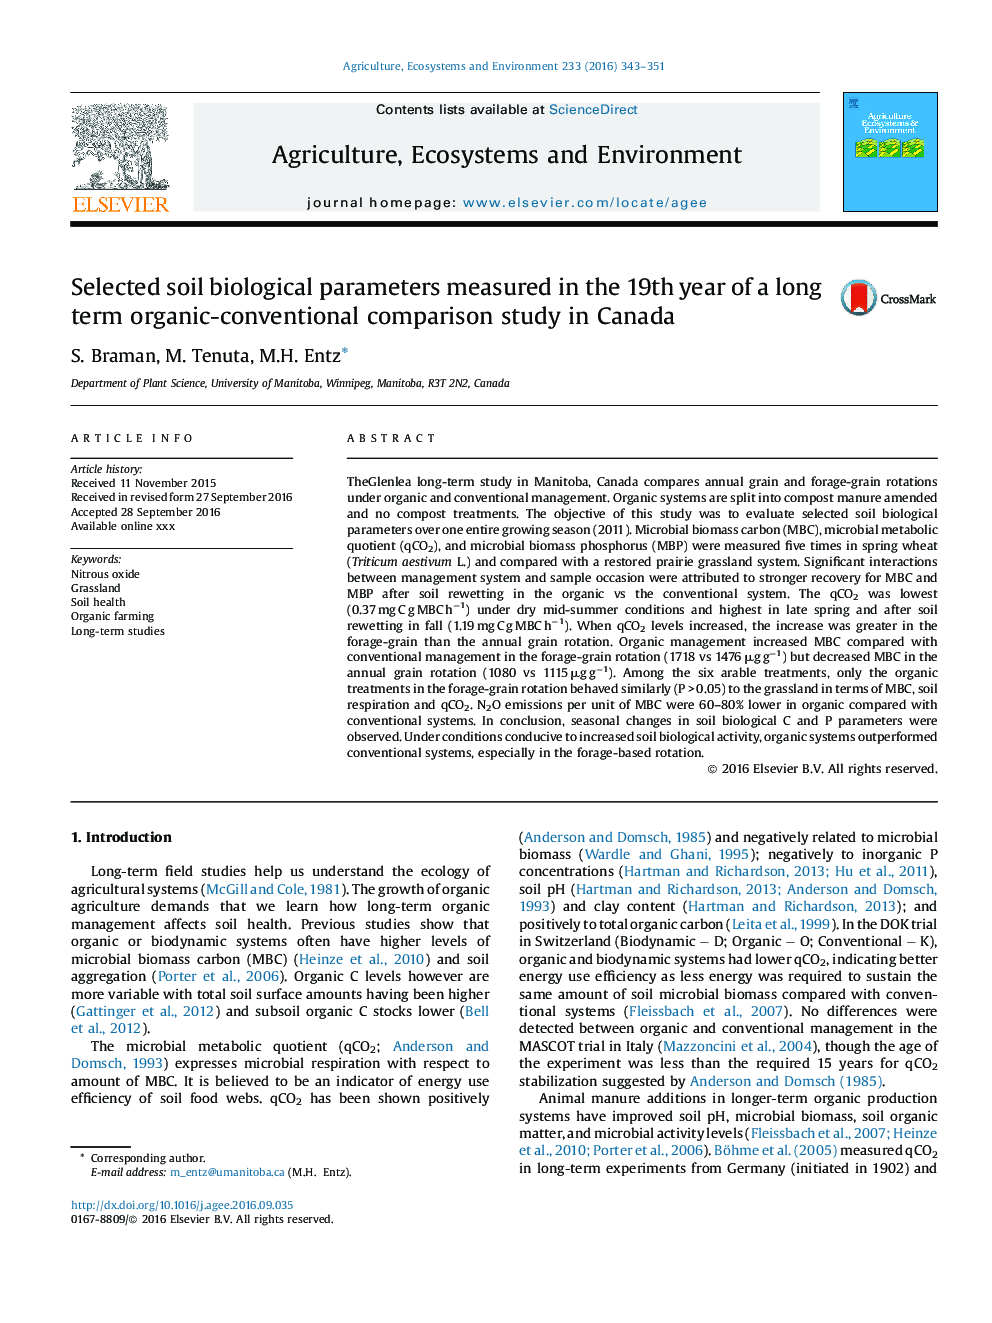 انتخاب پارامترهای بیولوژیکی خاک در سال 19 یک مطالعه نسبتا طولانی مدت ارزیابی متعارف در کانادا 